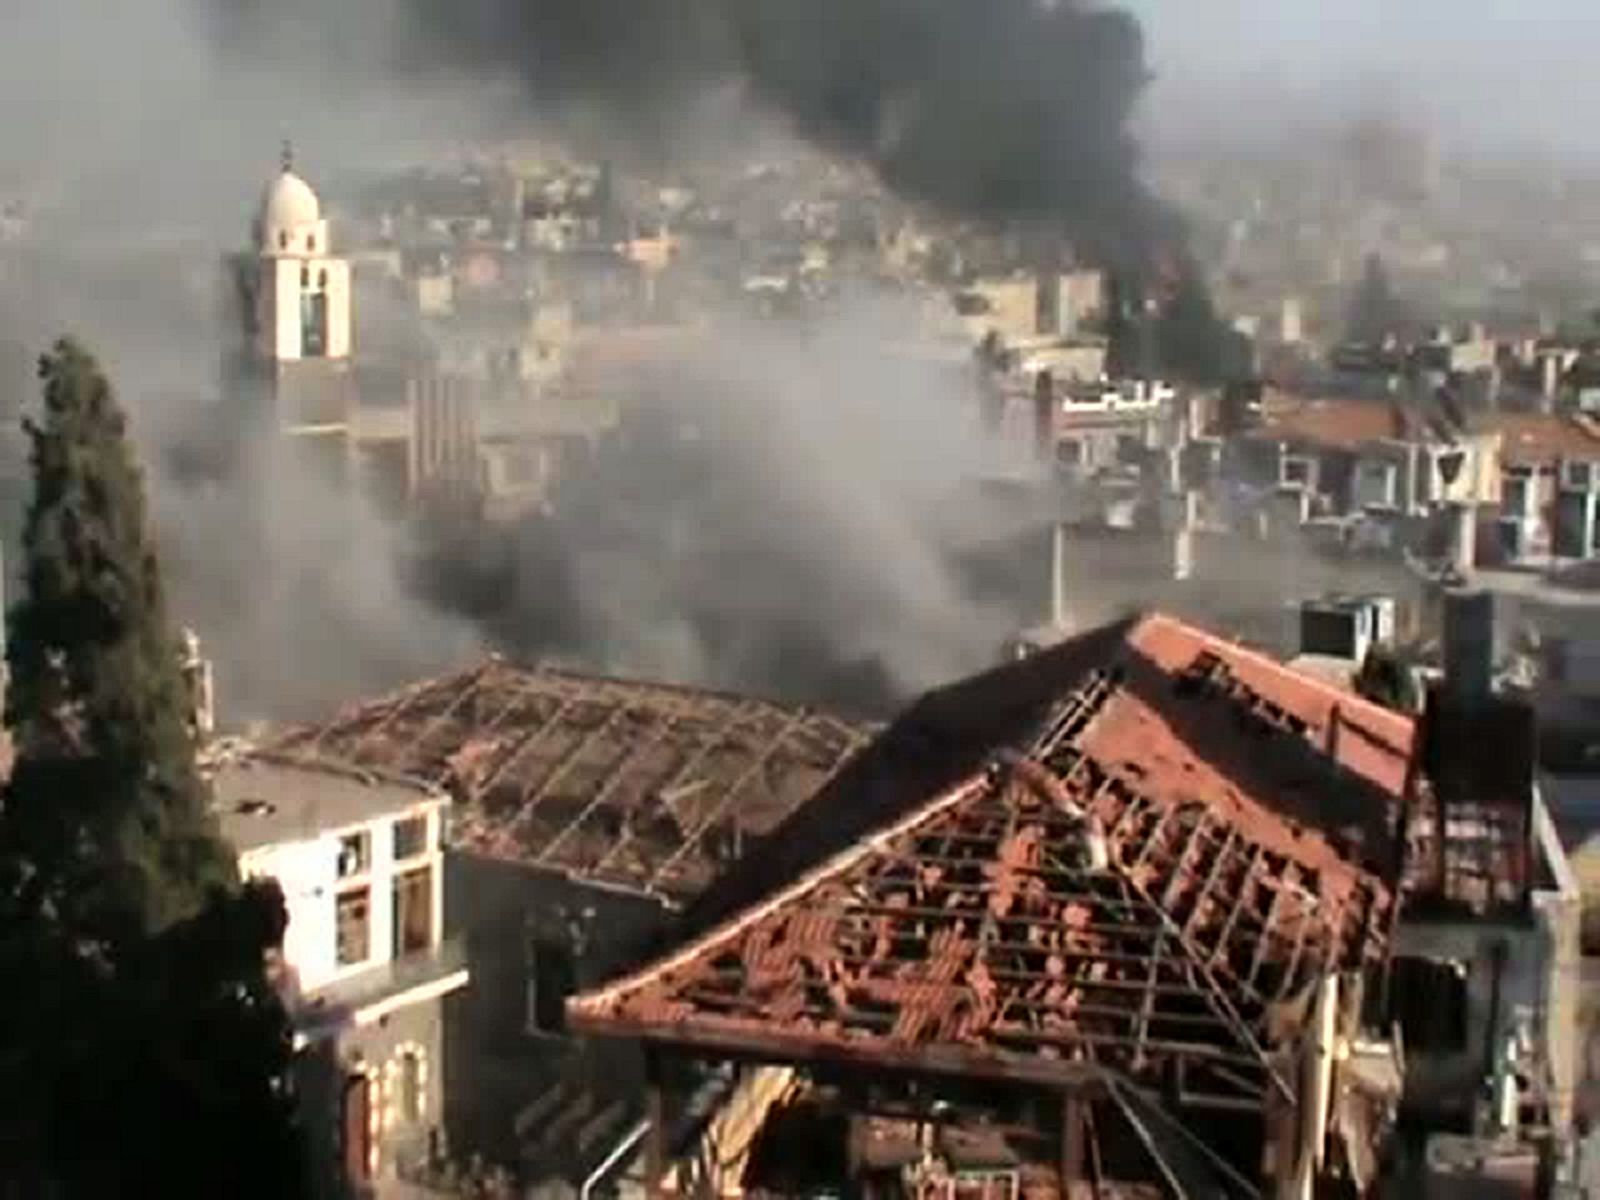 Imágen de videoaficionado conlgadas en YouTube con la que la oposición denuncia bombardeos del régimen sirio sobre Homs. Estas imágenes no han podido ser contrastadas por fuentes independientes